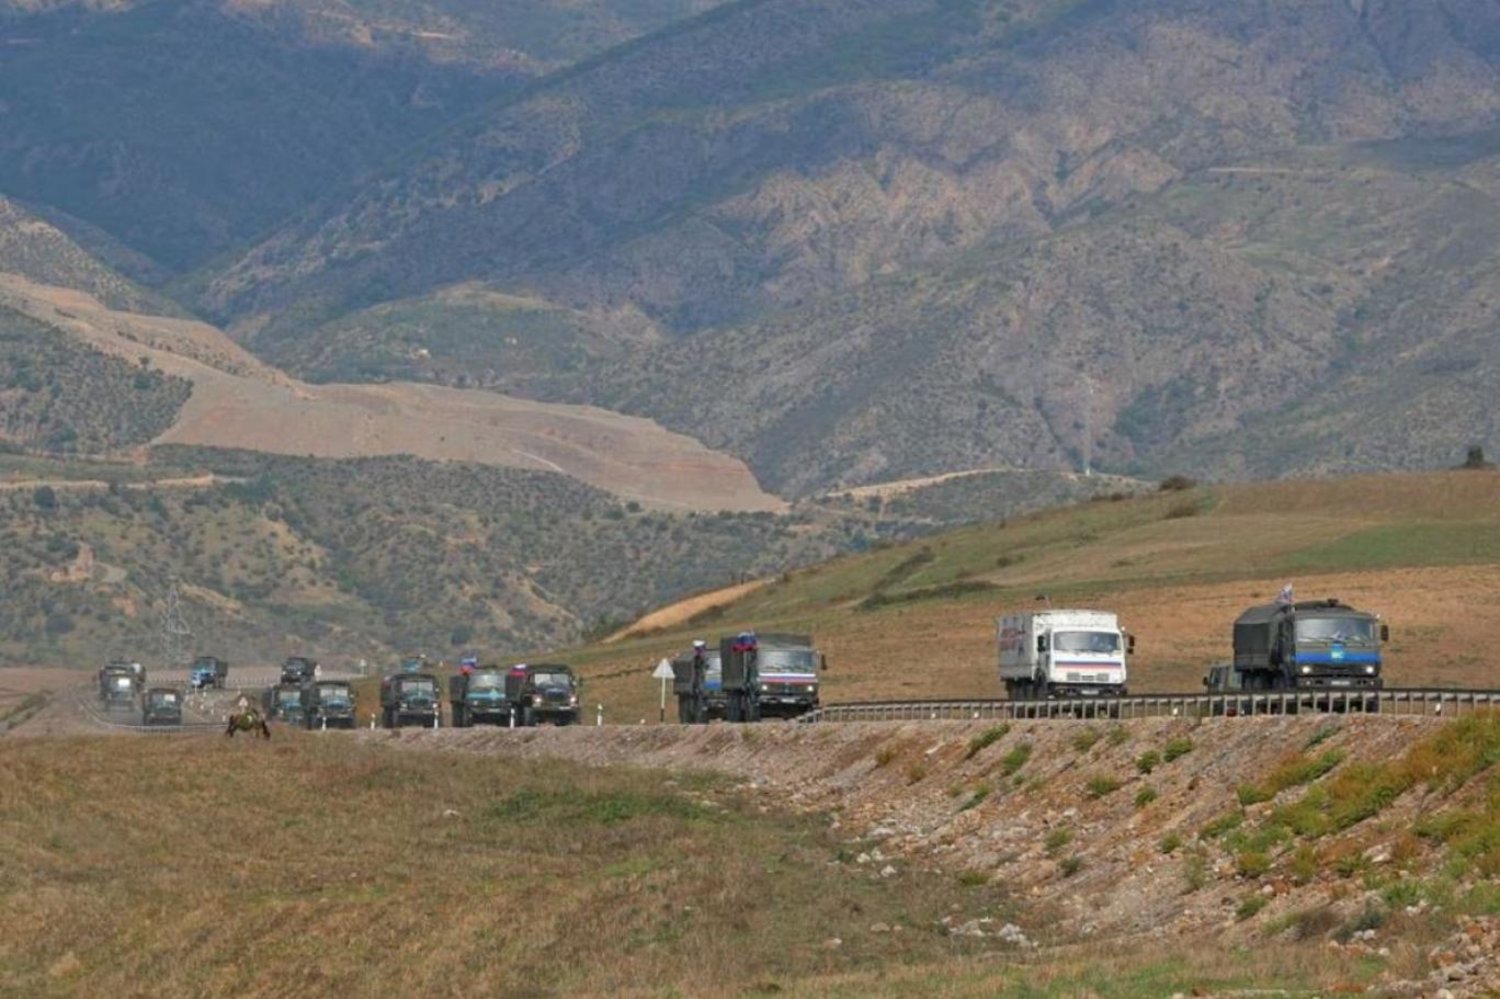 Bakü yönetimi, Karabağ operasyonunda 192 askerin hayatını kaybettiğini duyurmuştu (Reuters)